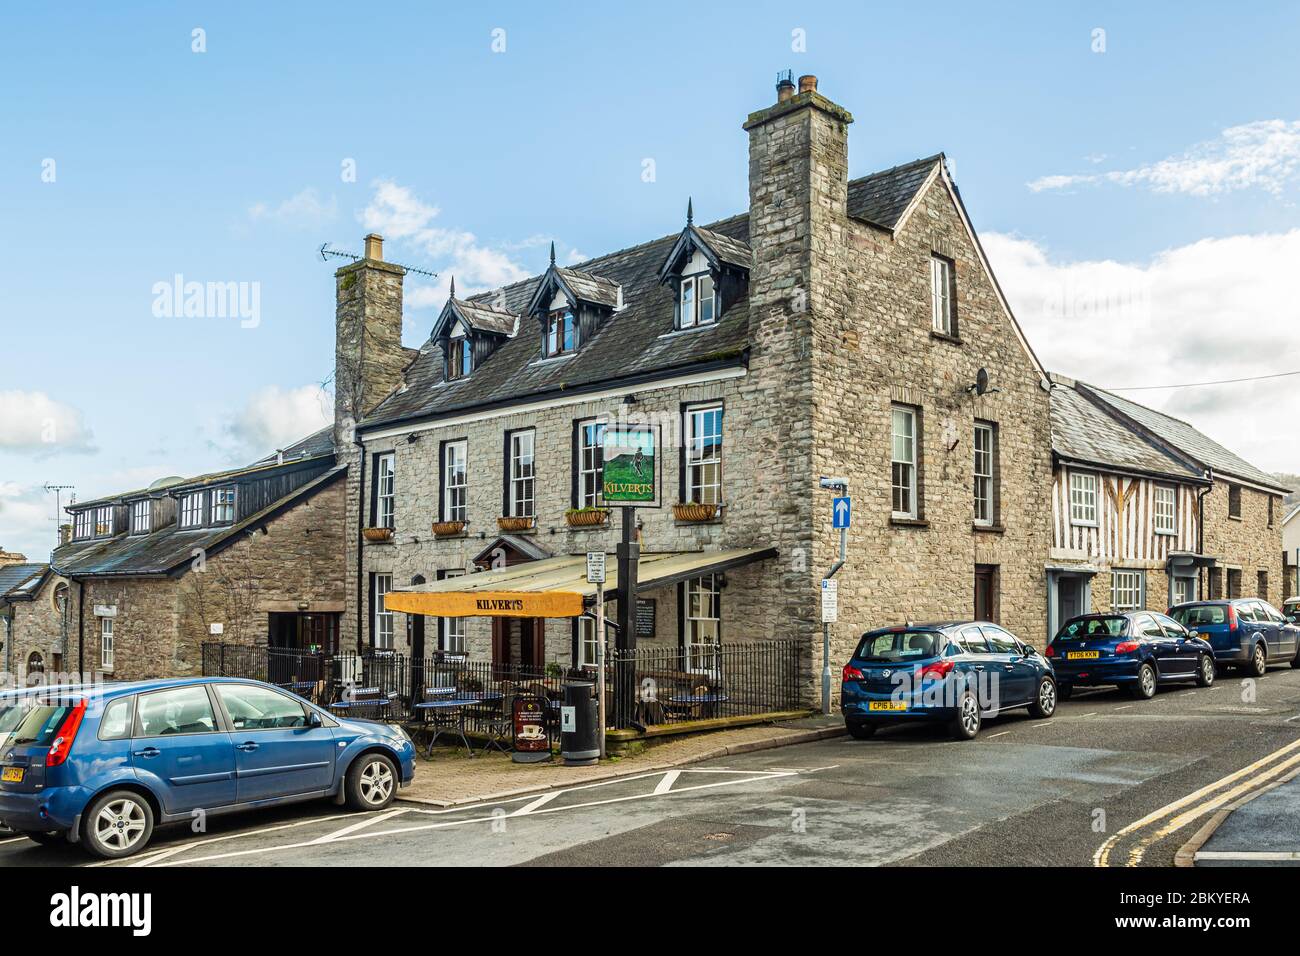 Hay-on-Wye, Reino Unido, 2 de abril de 2019: El Kilverts Inn ofrece alojamiento con restaurante, aparcamiento privado gratuito, bar y pista de tenis. Foto de stock